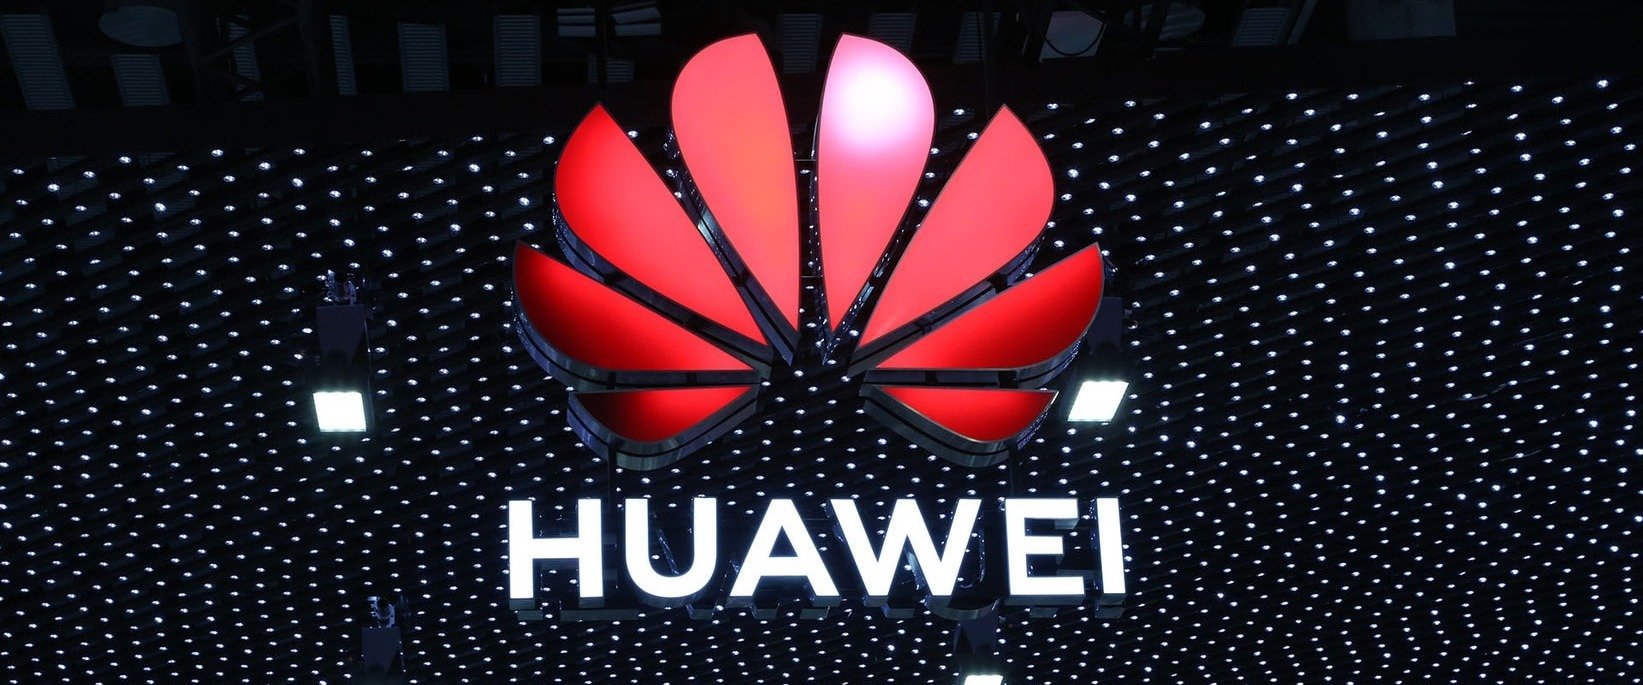 Prezes Huawei ma przepis na udaną cyfryzację - biznes musi być gotowy na zmiany w każdej chwili